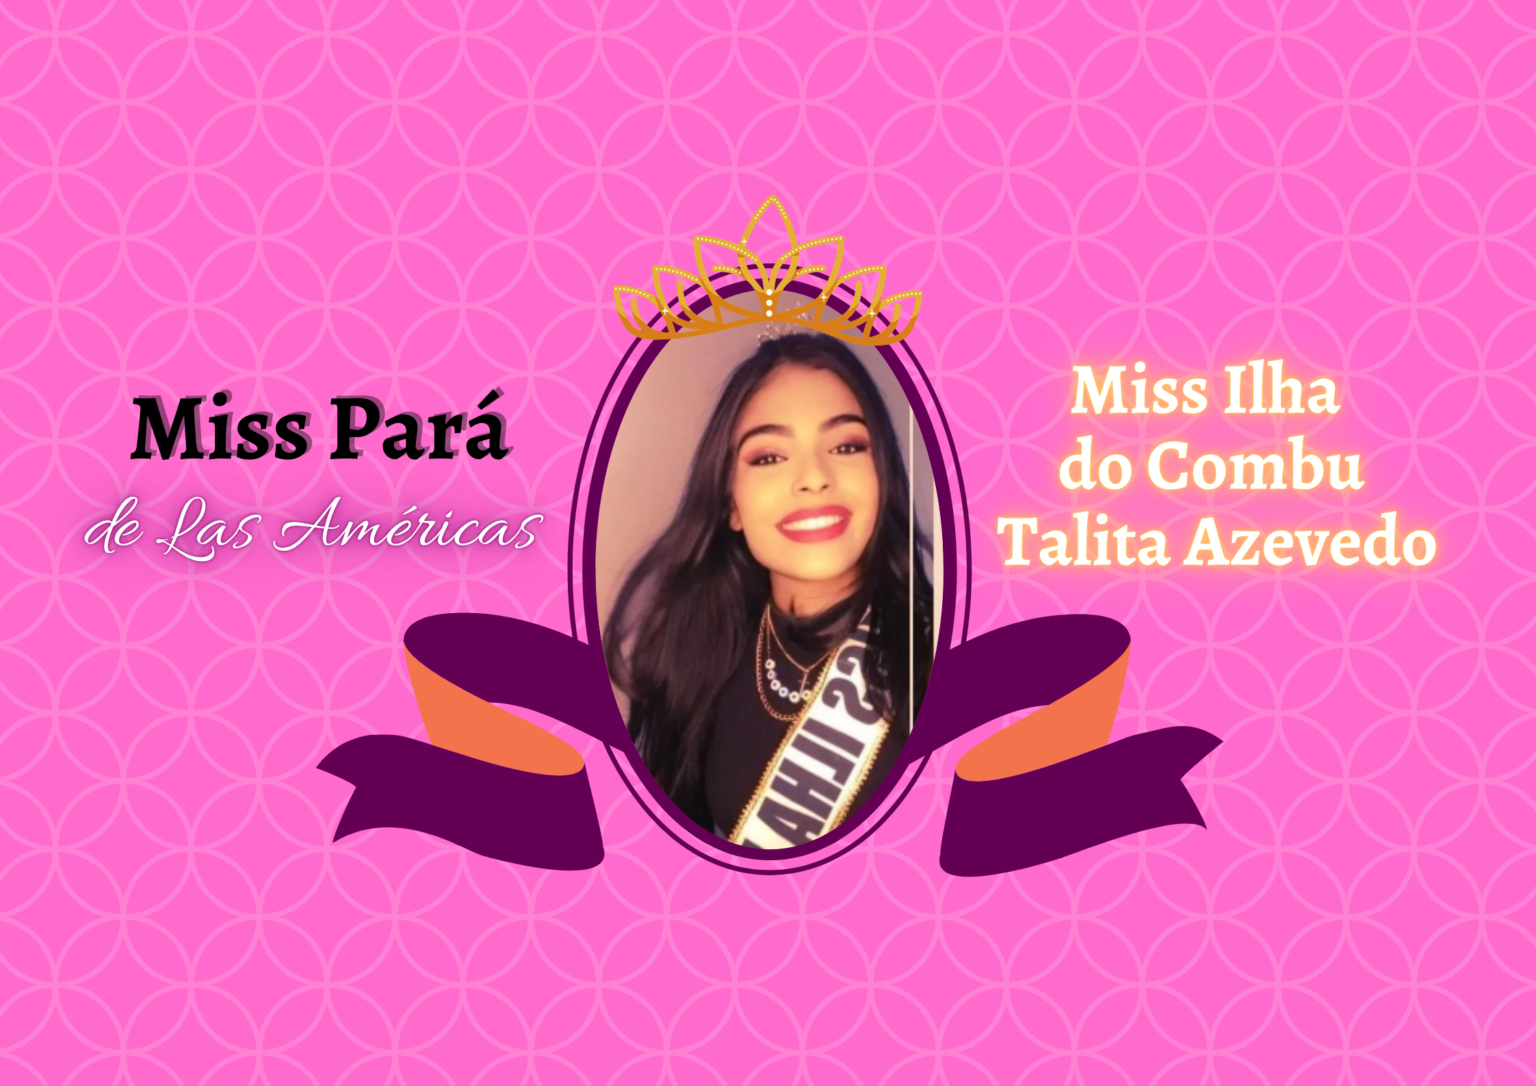 Miss Ilha do Combu concorre ao Miss Pará de Las Américas 2022